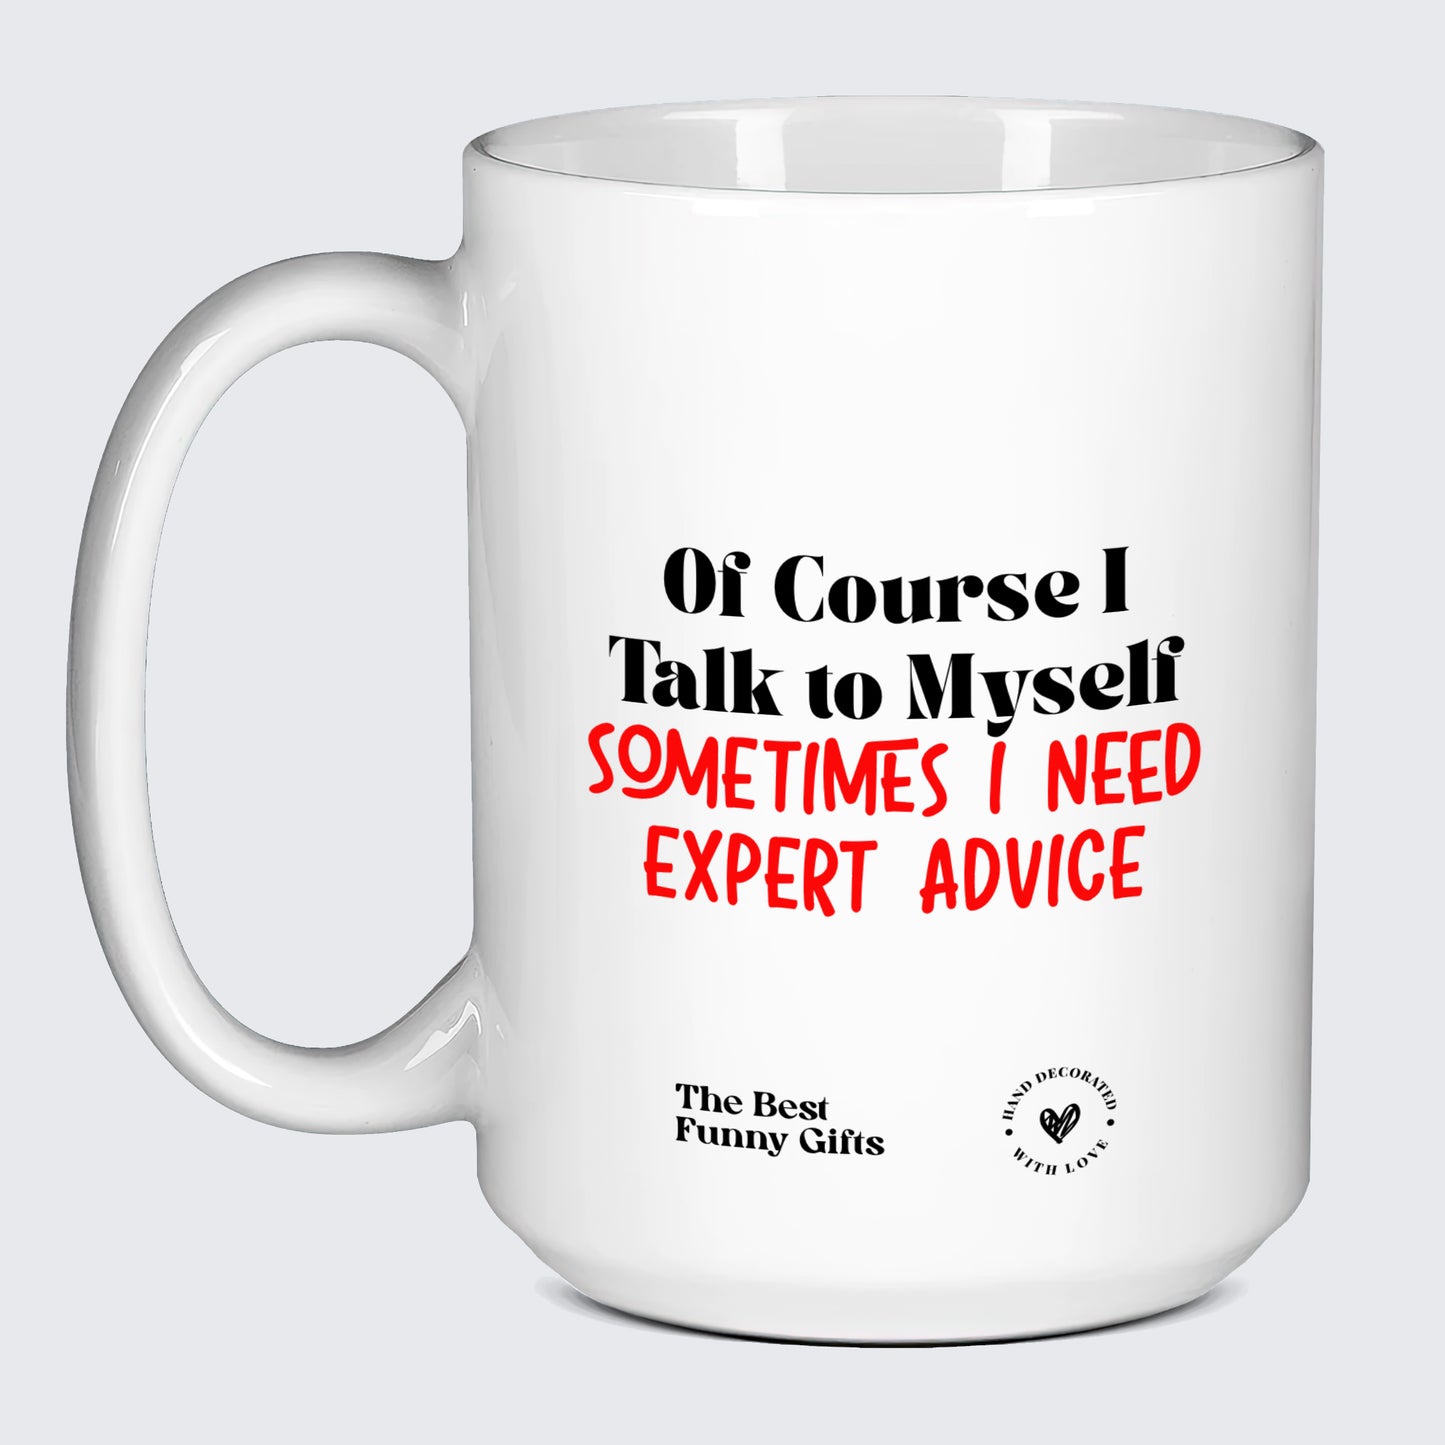 Funny Mugs - Of Course I Talk to Myself (Sometimes I Need Expert Advice) - Coffee Mug